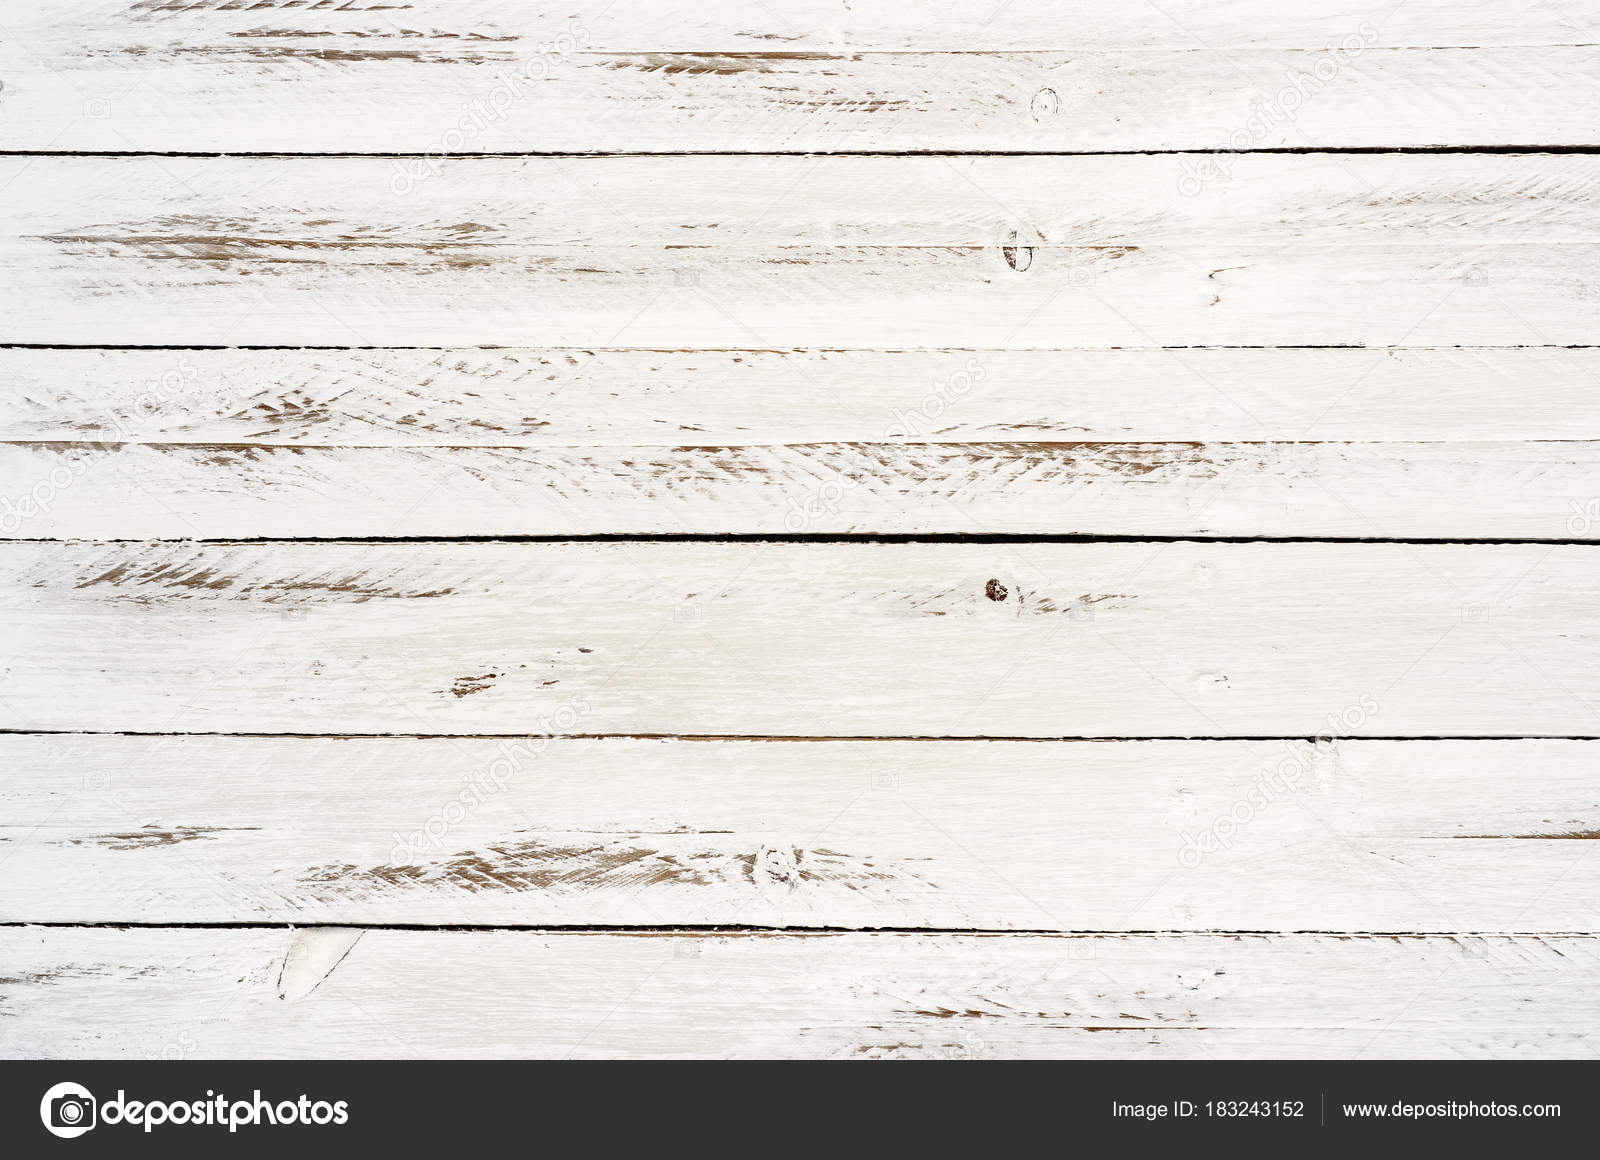 Nền gỗ trắng xếp lát: Nền gỗ trắng xếp lát mang đến cho không gian của bạn một vẻ đẹp sang trọng và thanh lịch. Với màu trắng tinh khiết, nền gỗ này sẽ tạo nên một bức tranh hoàn hảo cho không gian sống của bạn.